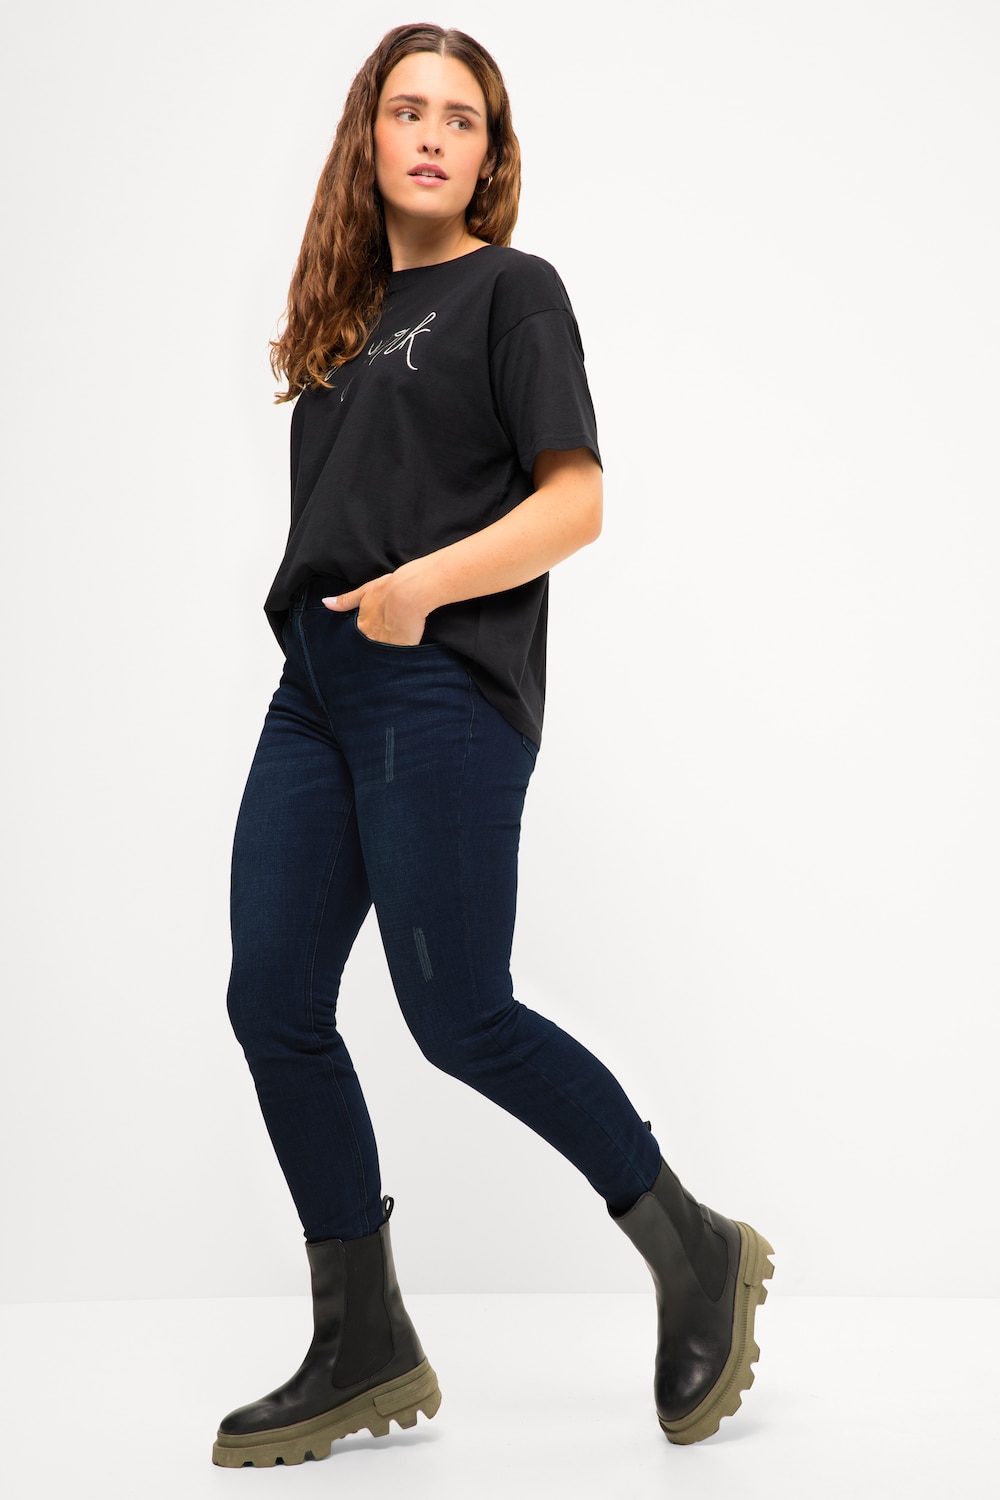 Grote Maten Skinny jeans, Dames, blauw, Maat: 46, Viscose/Katoen/Polyester, Studio Untold